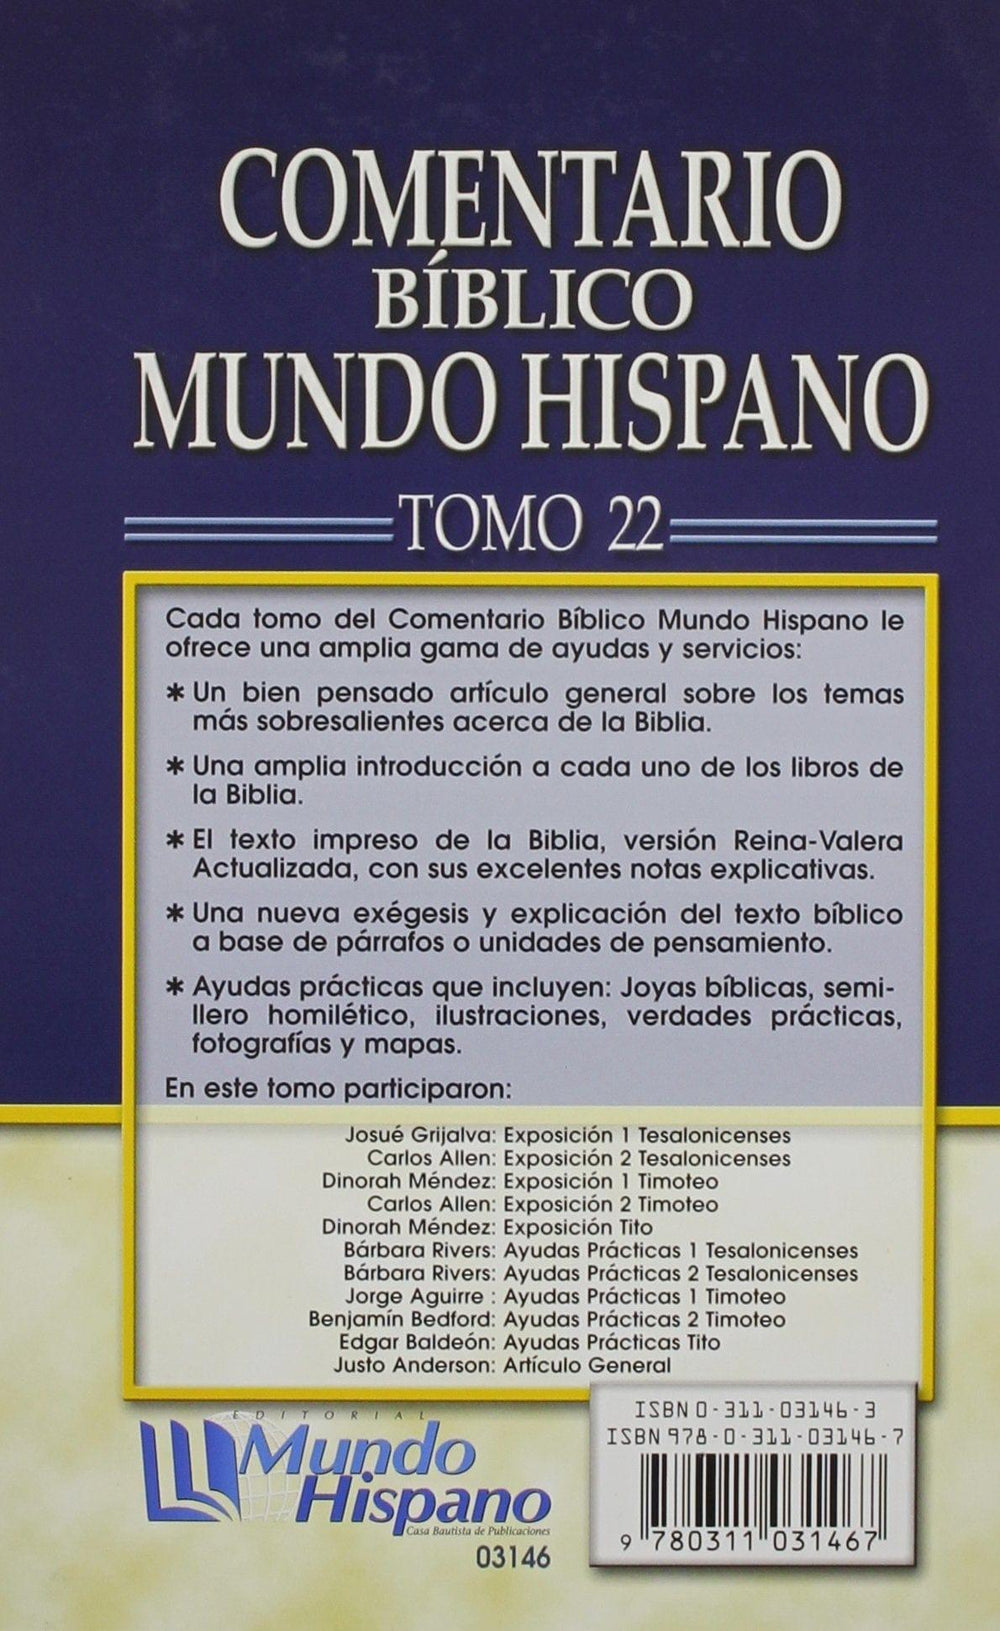 Comentario Bíblico Mundo Hispano - Tomo 22 - 1 y 2 Tesalonicenses, 1 y 2 Timoteo y Tito - Pura Vida Books